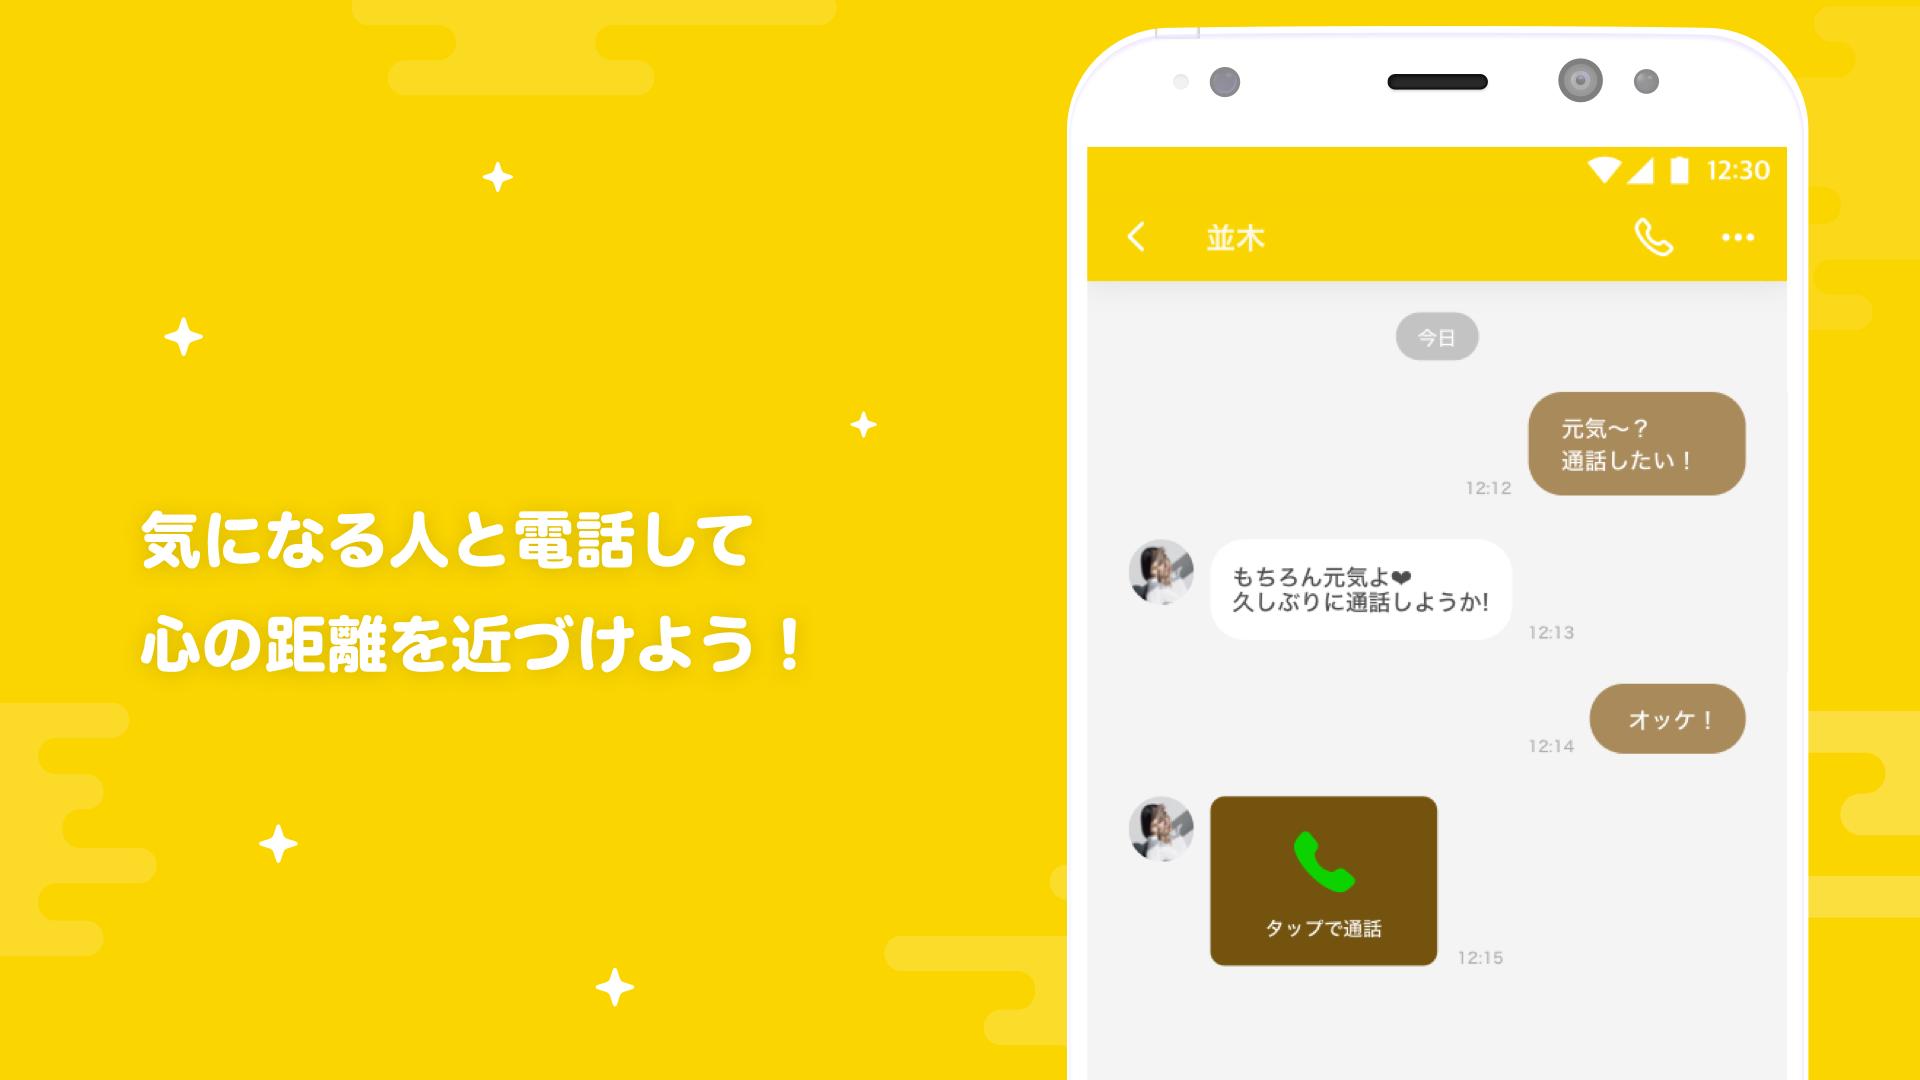 Android 用の ひまつぶしチャットsnsアプリ Lemon レモン Apk をダウンロード